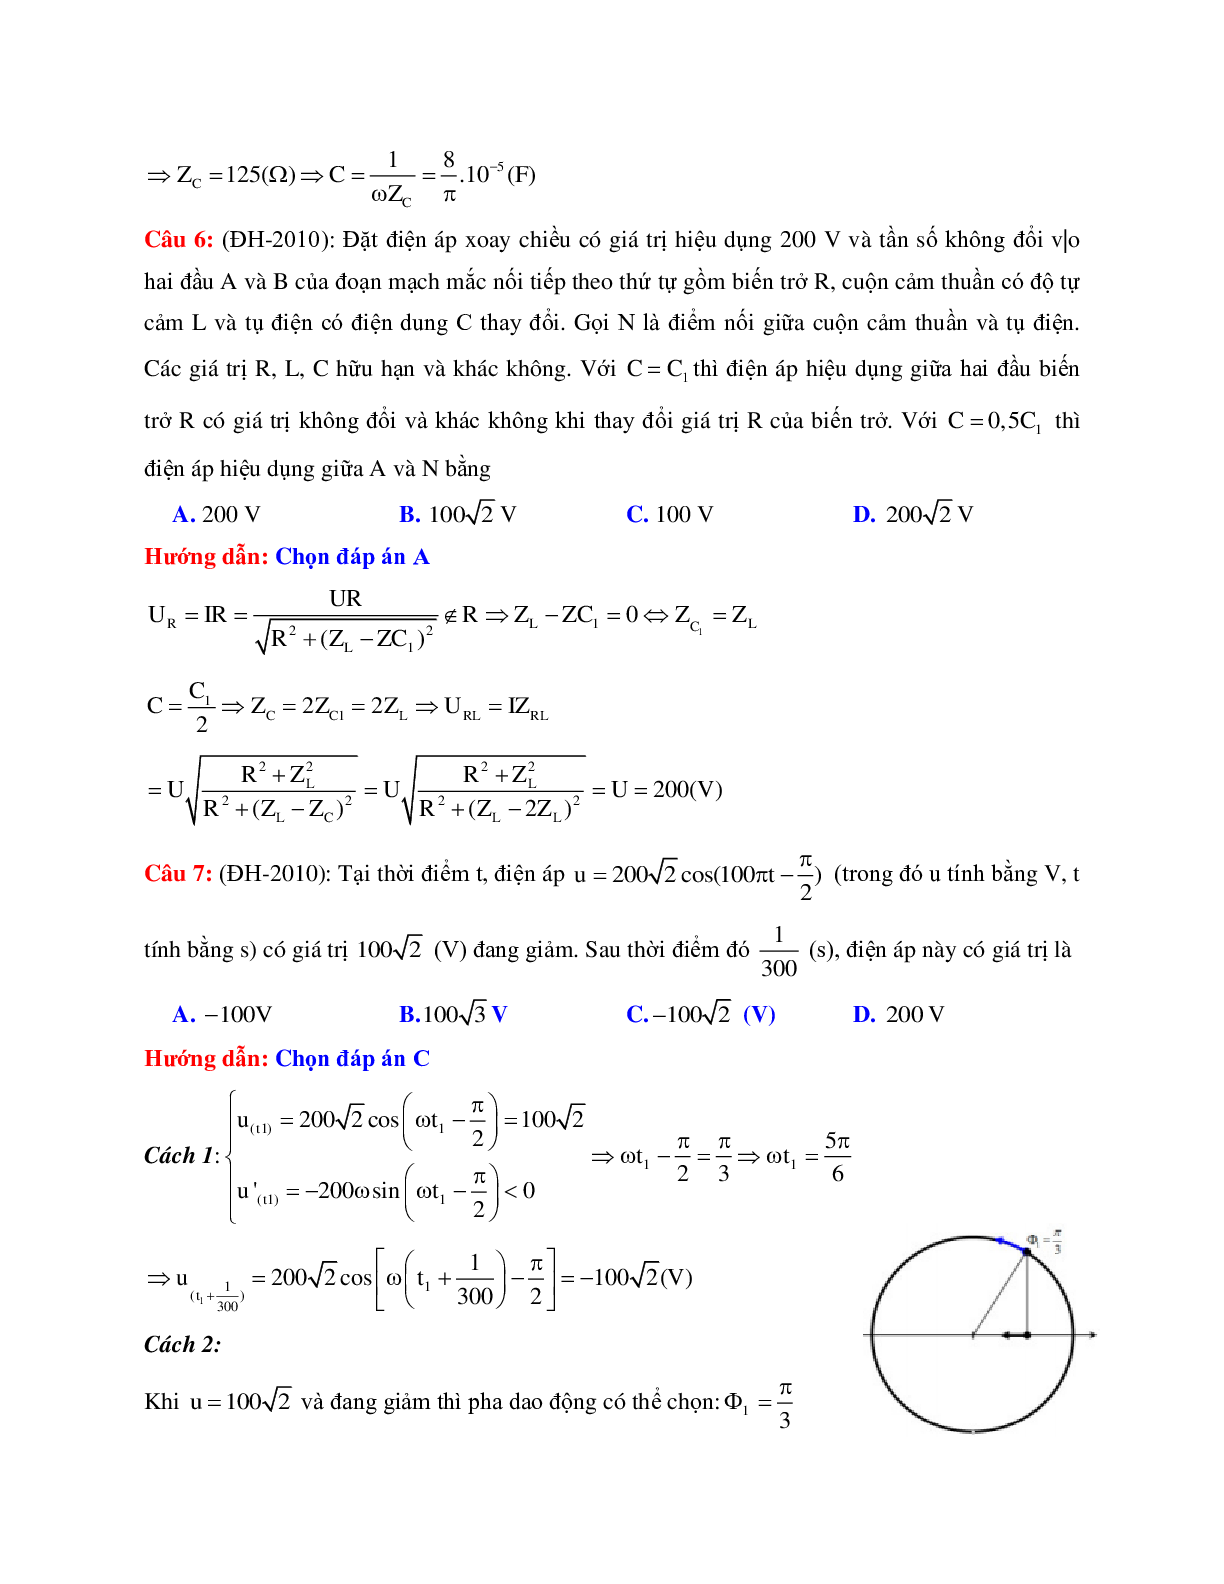 Giải nhanh chuyên đề Điện xoay chiều môn Vật lý lớp 12 (trang 3)